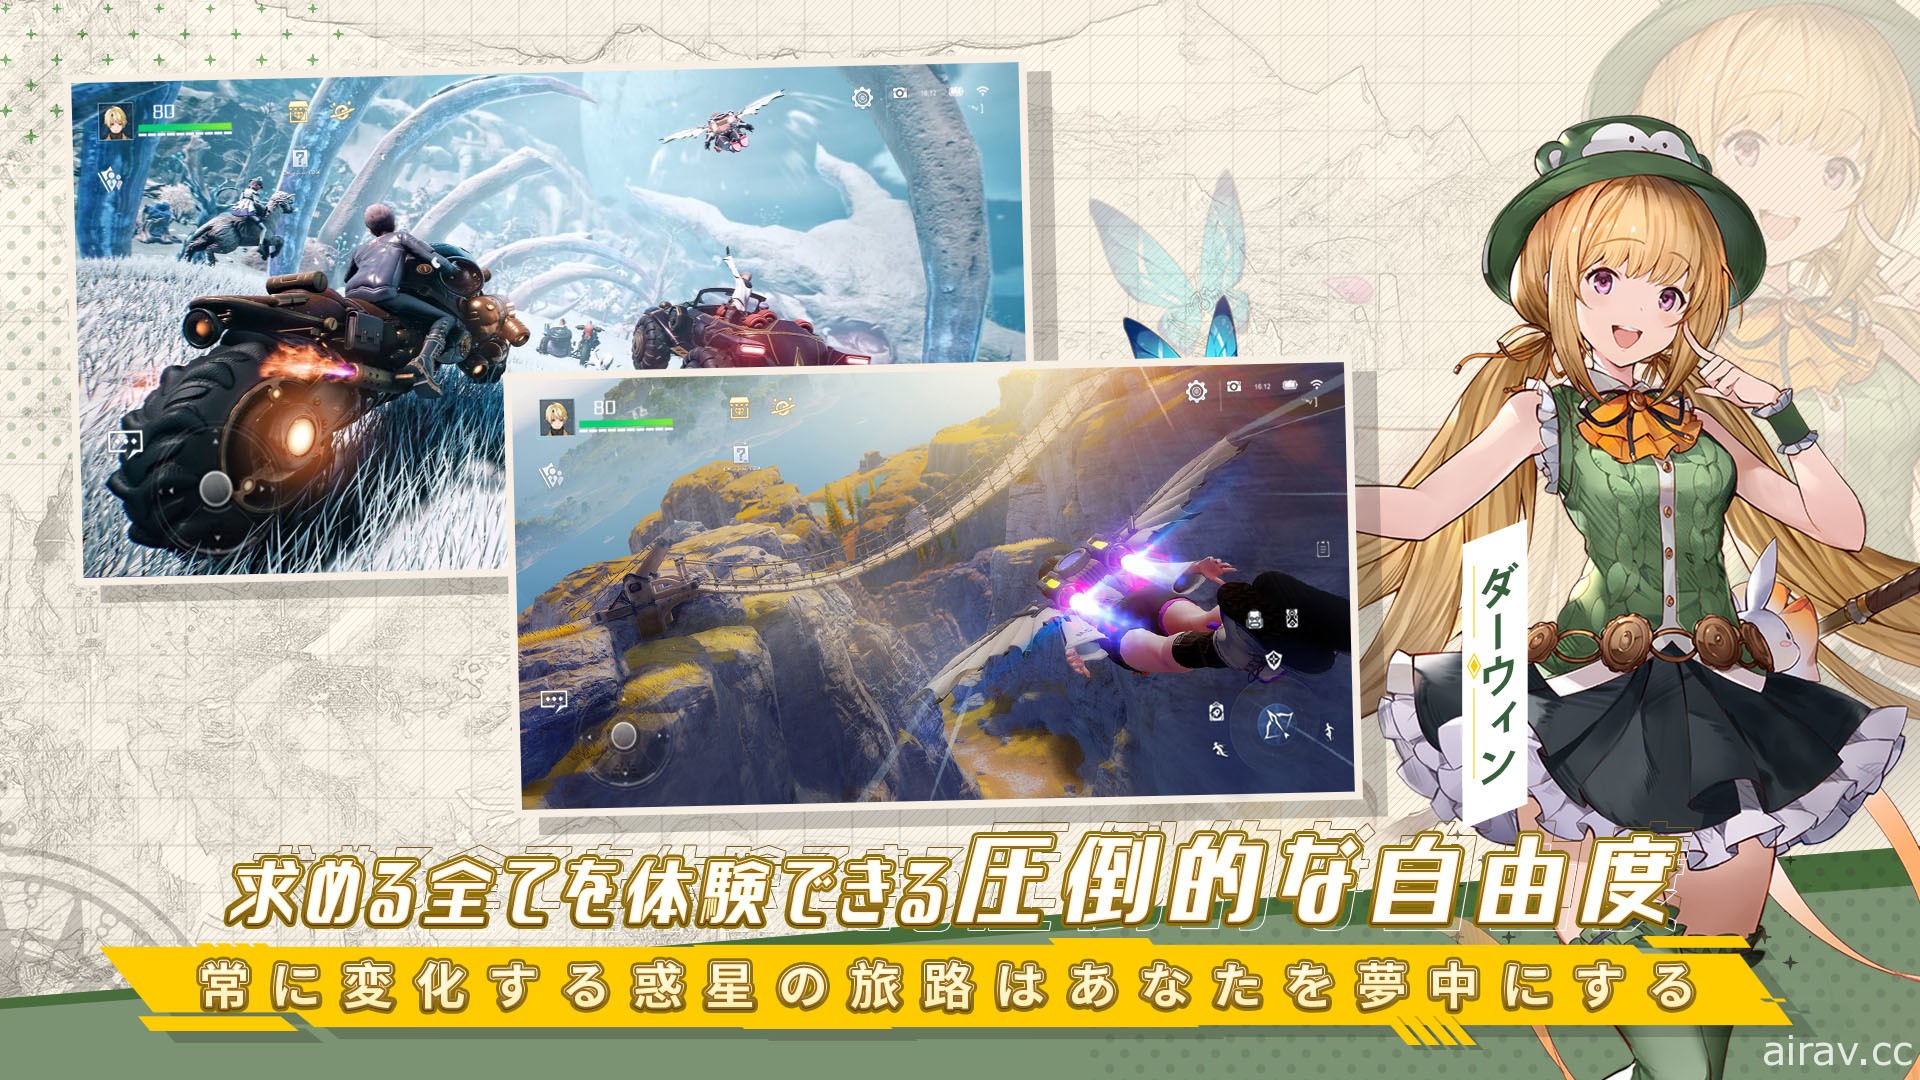 星球探索型開放世界 RPG《諾亞之心》於日本展開預先註冊